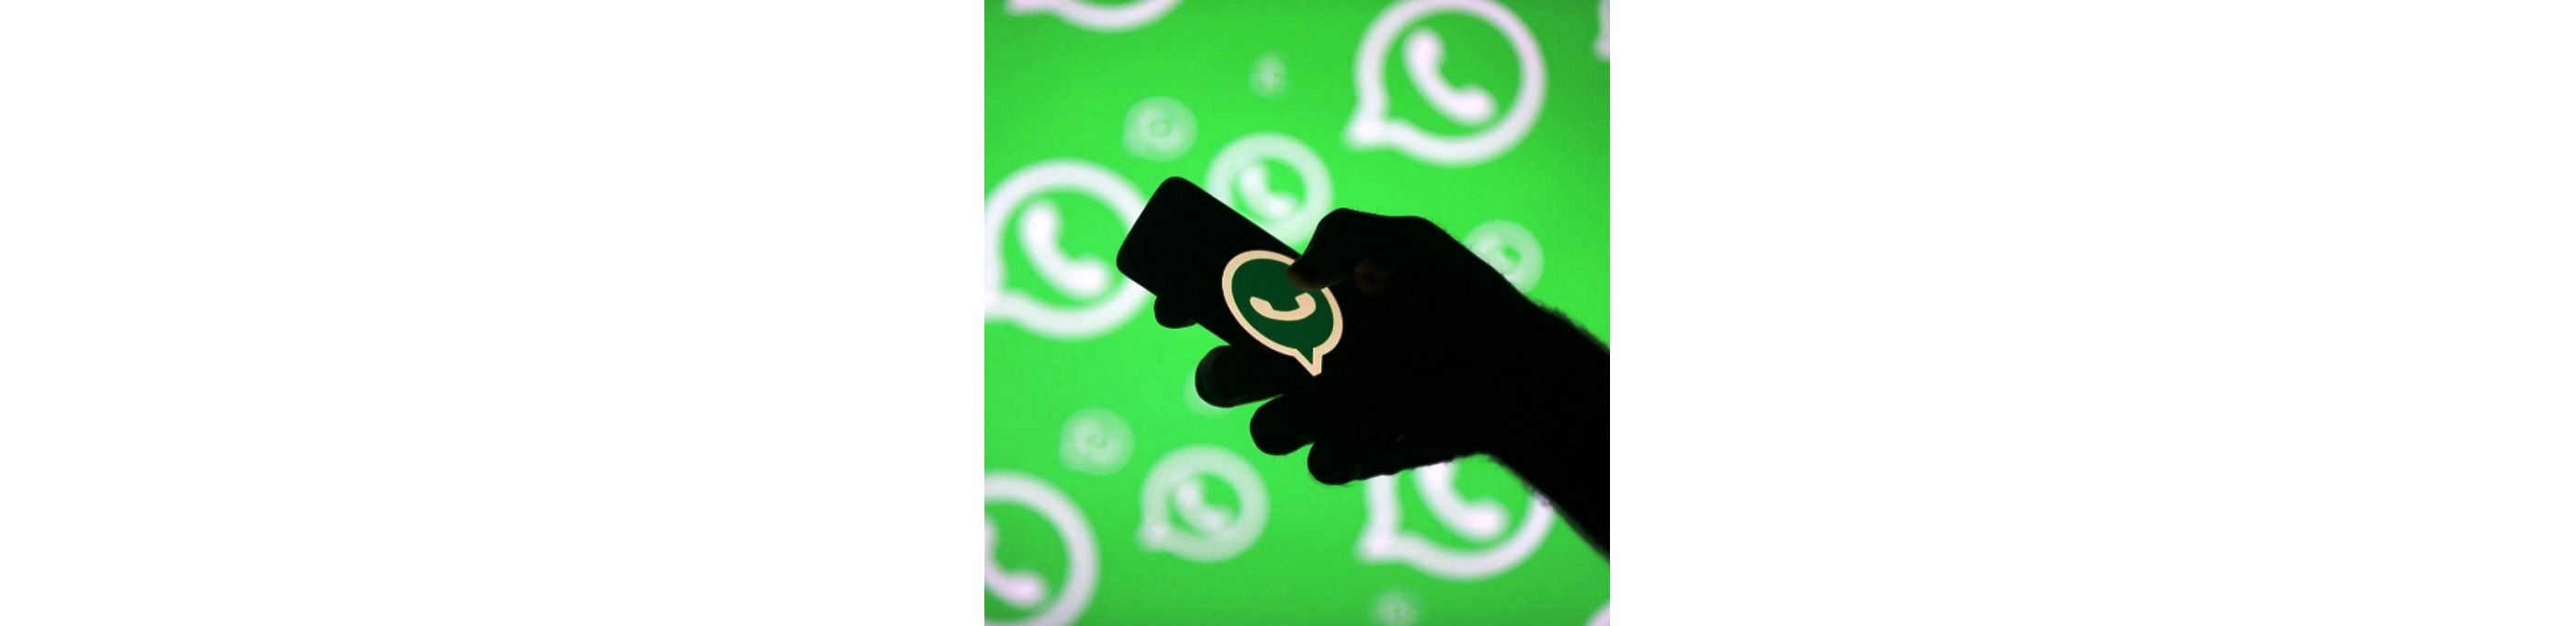 Совсем недавно было зафиксировано несколько попыток слежки за известными правозащитниками с помощью мобильного приложения WhatsApp